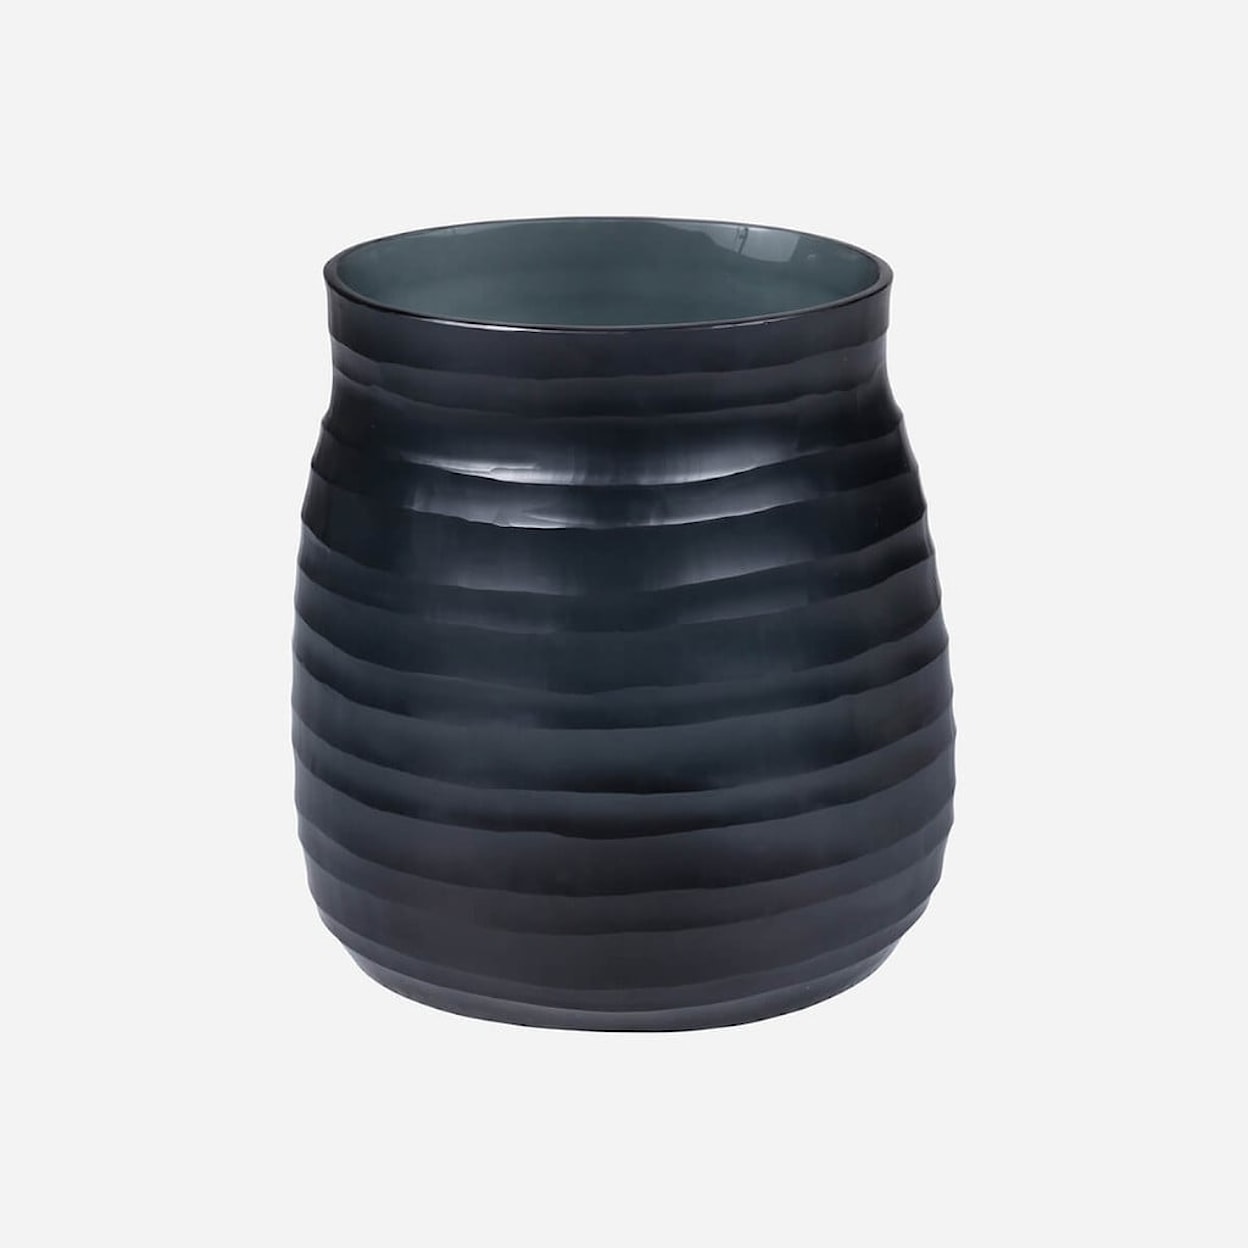 BOBO Intriguing Objects BOBO Intriguing Objects Escaut Dark Indigo Glass Vase - Medium